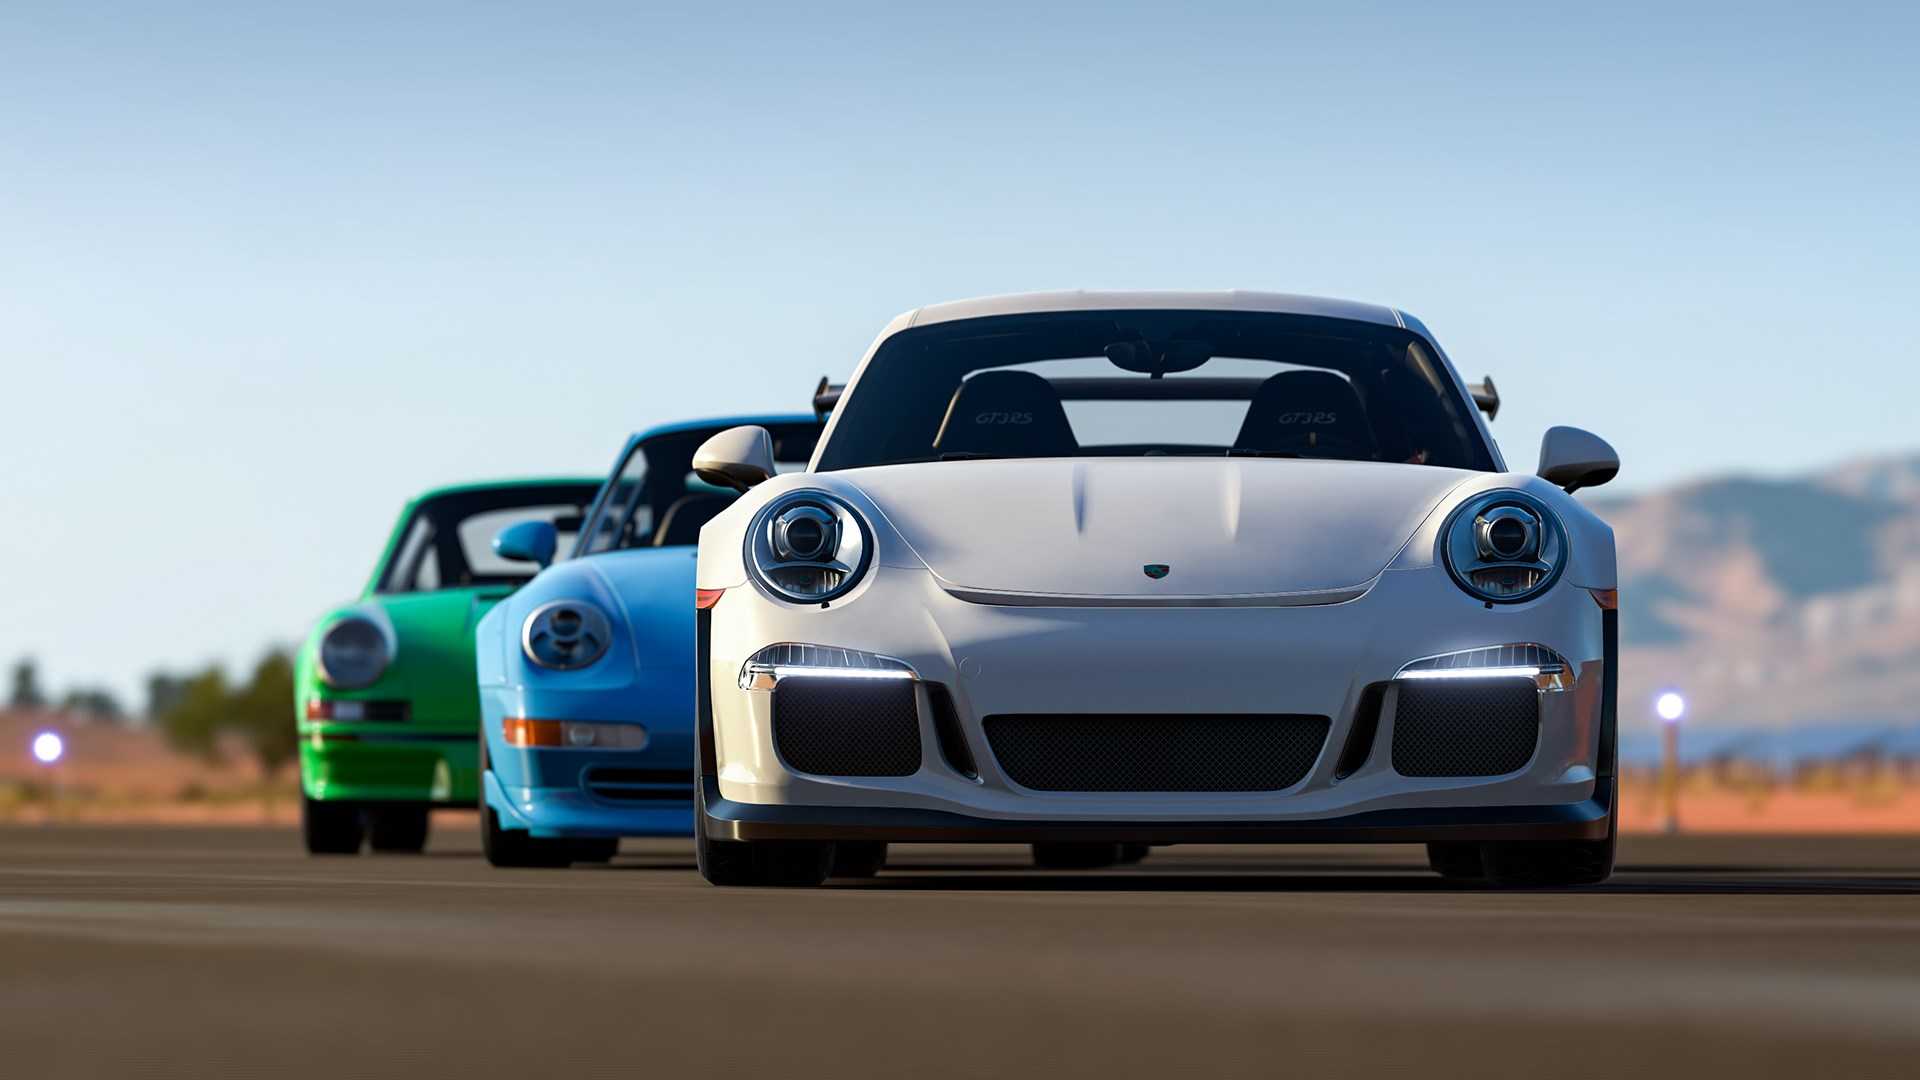 Forza Horizon 3 Porsche 911 Wallpapers